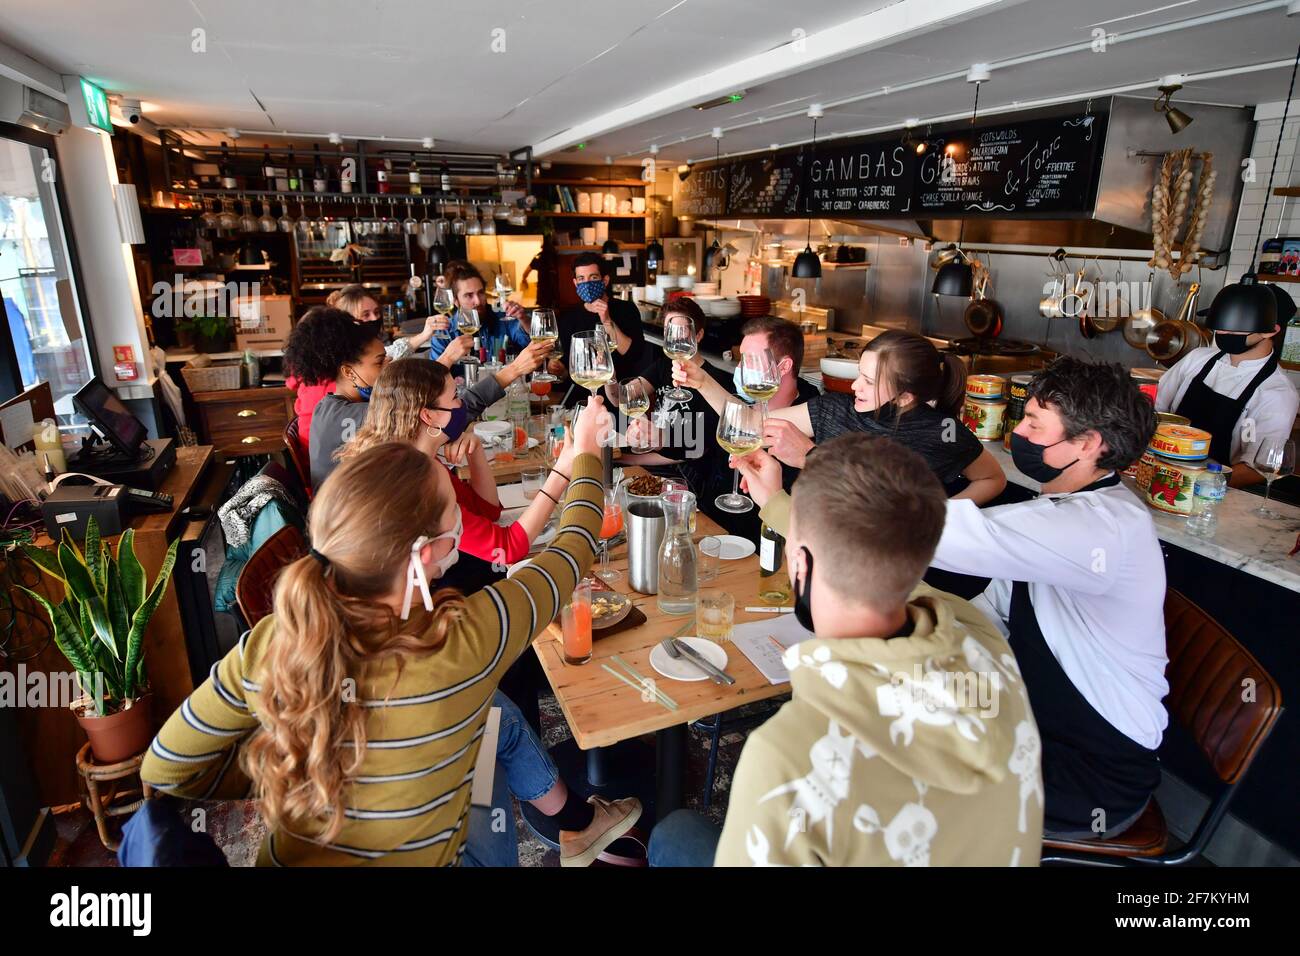 Mitarbeiter nehmen an einer Menüverkostung in der Gambas Tapas Bar in Wapping Wharf, Bristol Teil, während sie sich darauf vorbereiten, am 12. April, wenn weitere Sperrbeschränkungen in England gelockert werden, für das Abendessen im Freien wieder zu öffnen. Bilddatum: Donnerstag, 8. April 2021. Stockfoto